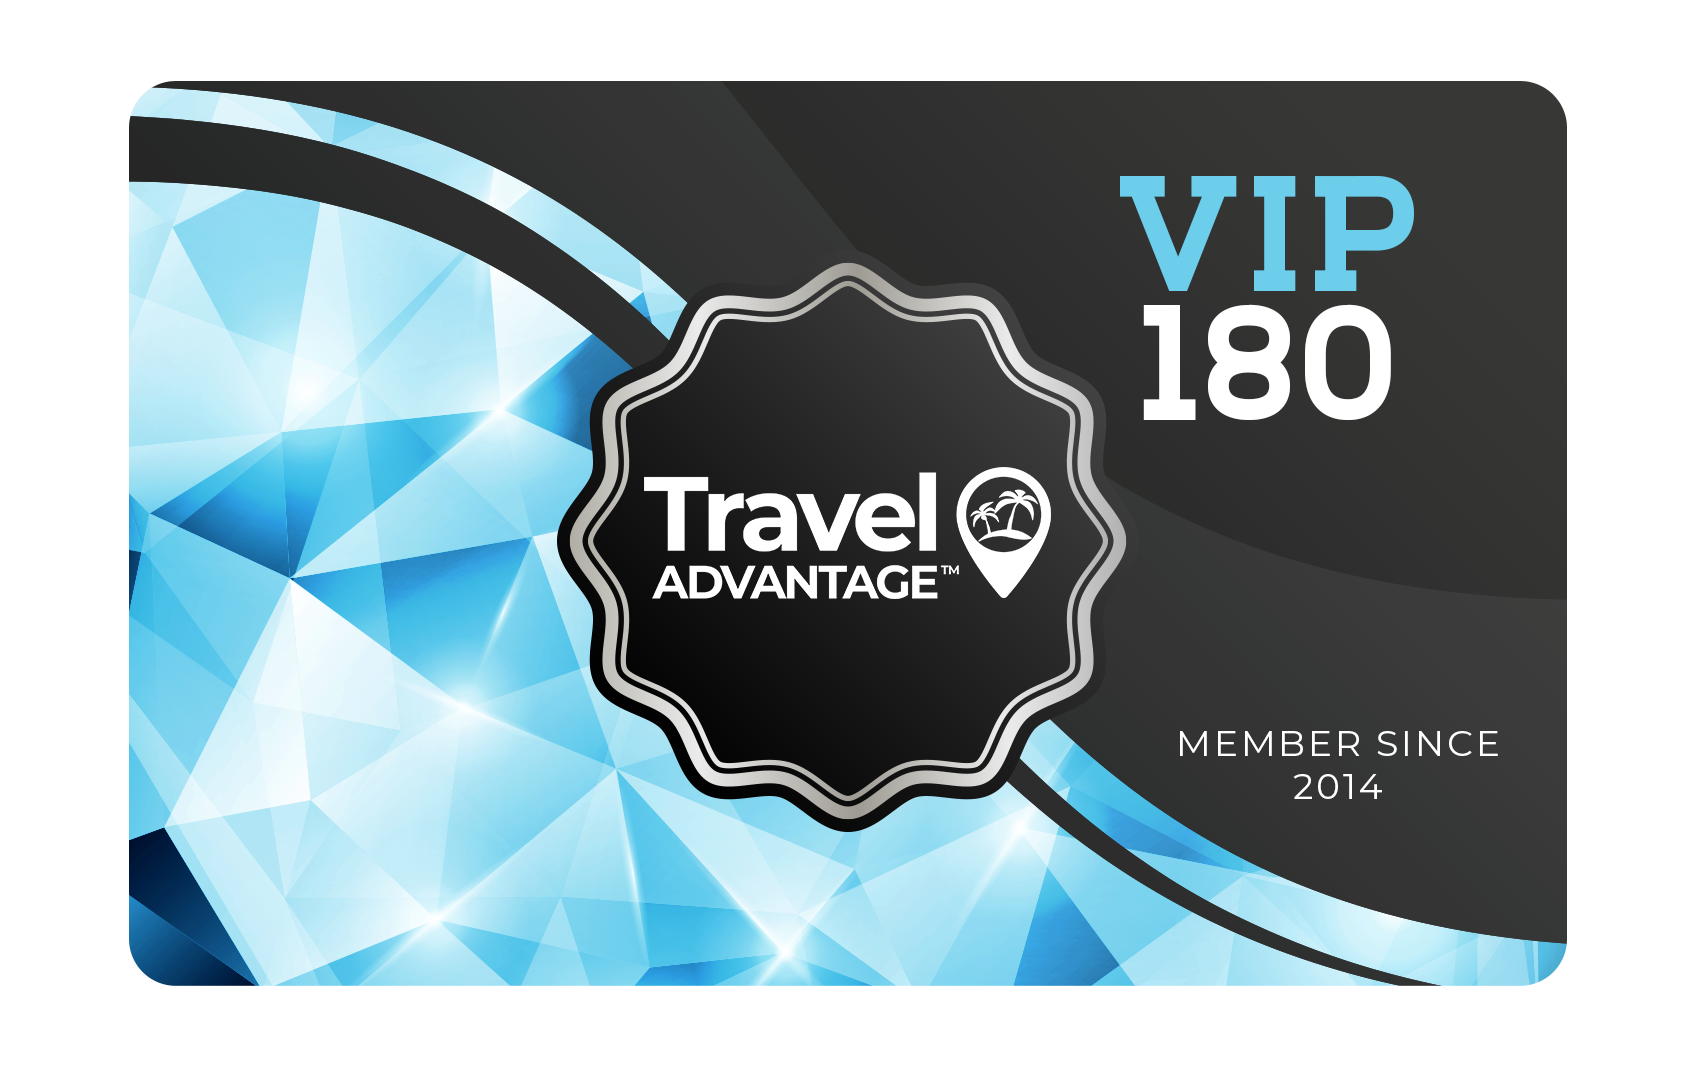 Travel Advantage VIP180